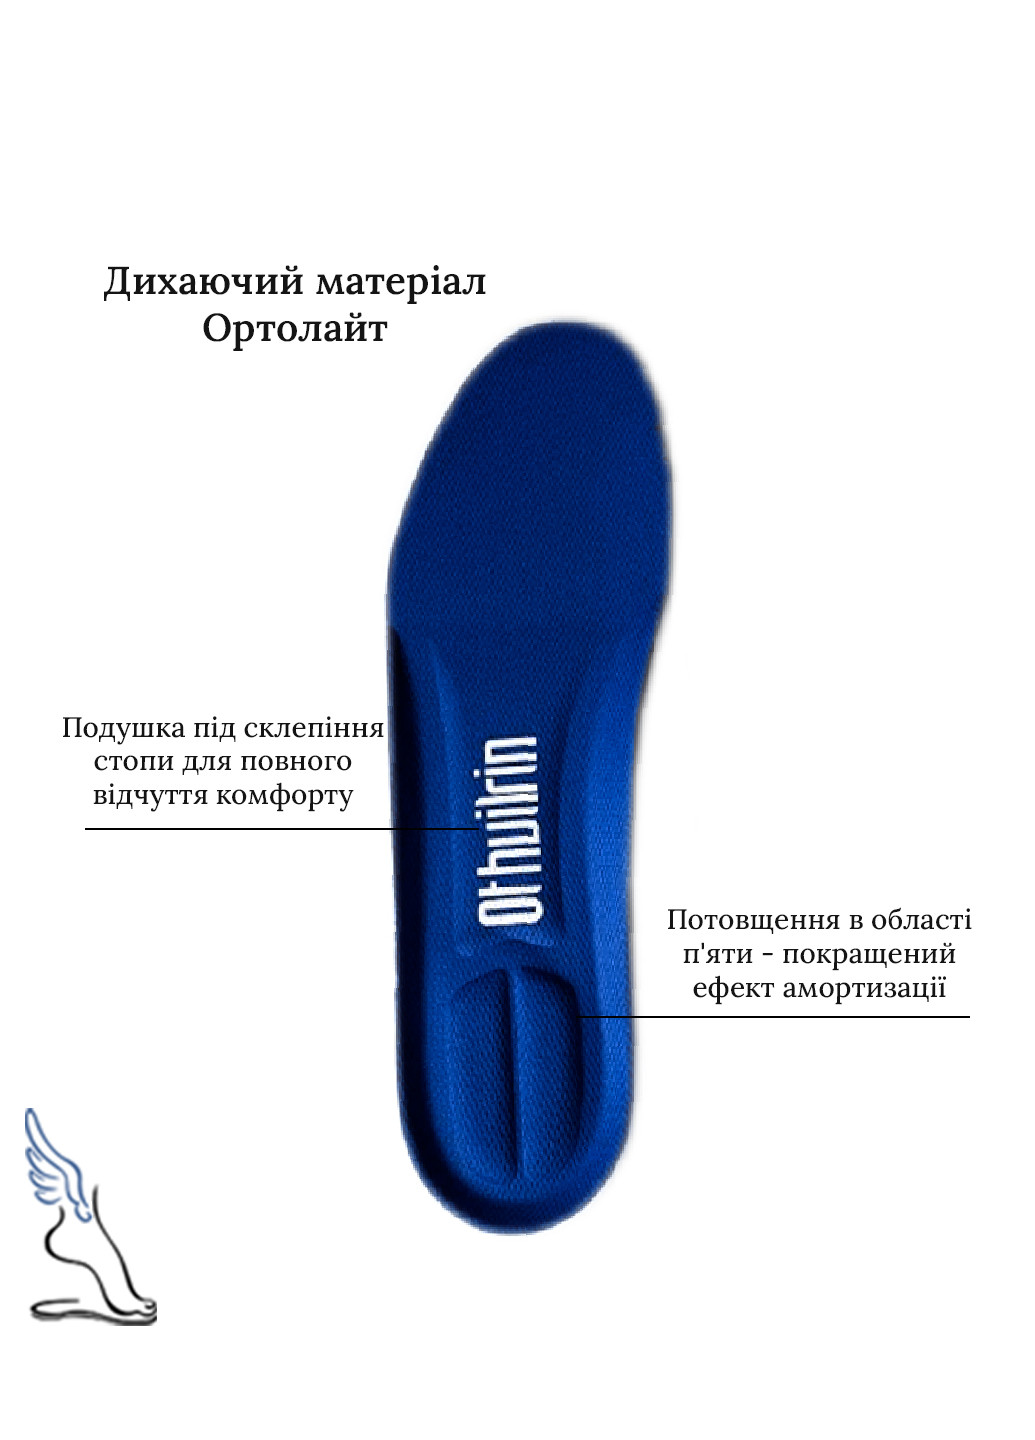 Спортивные амортизационные стельки для обуви Ortholite No Brand (257560302)